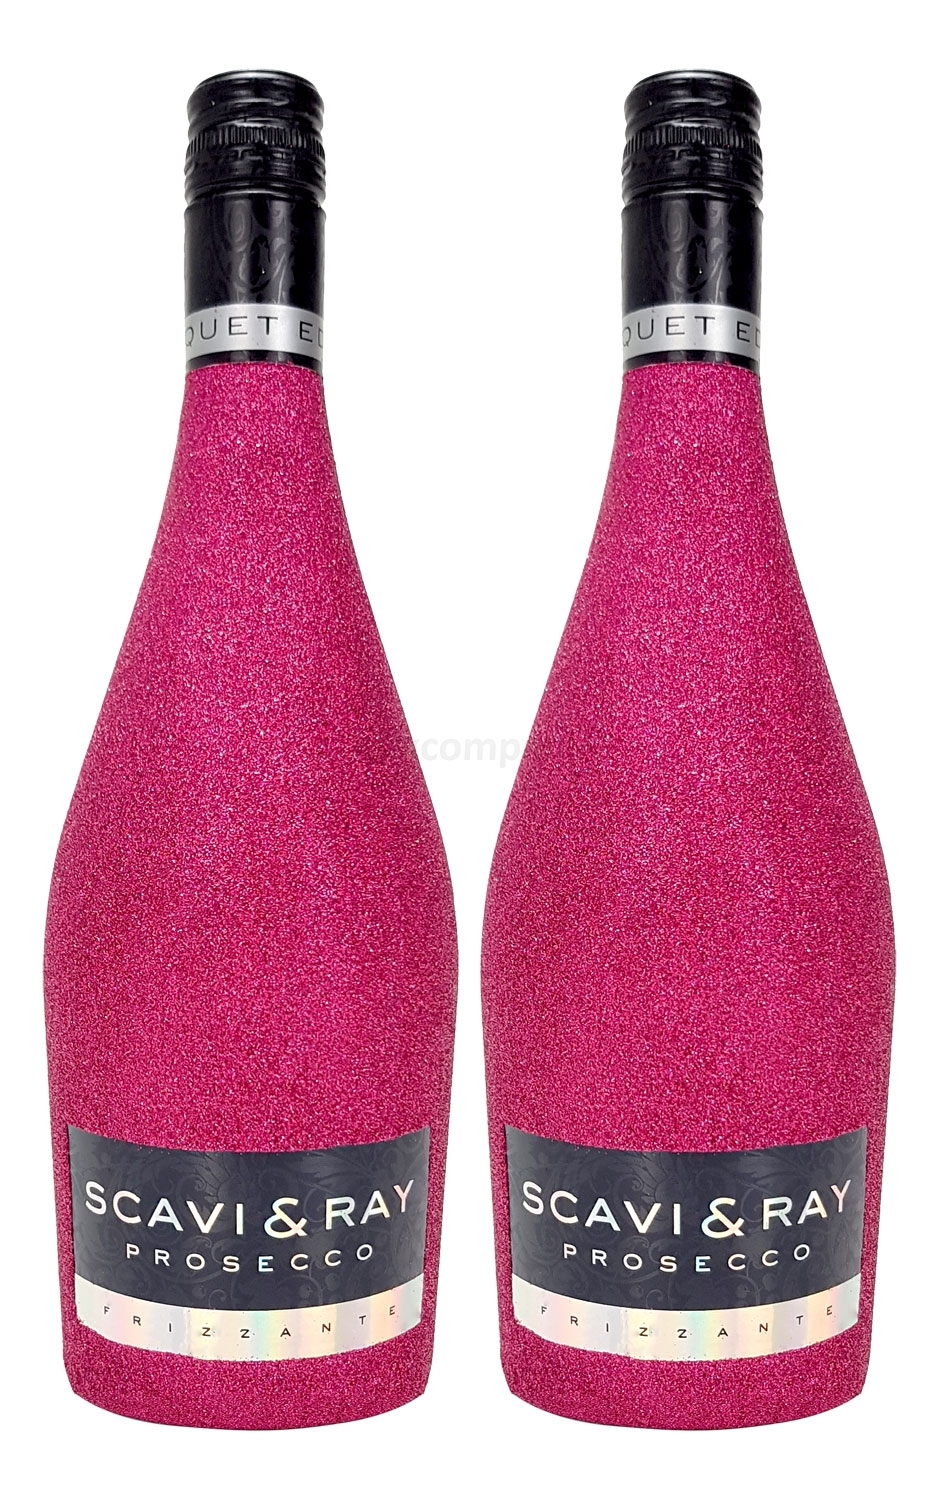 Scavi & Ray Prosecco Frizzante 2 Stück 0,75l (10,5% Vol) - Bling Bling Glitzer Flaschenveredelung für besondere Anlässe - Hot Pink Aktion - 2 Stück (2x 0,75l = 1,5l) -[Enthält Sulfite]